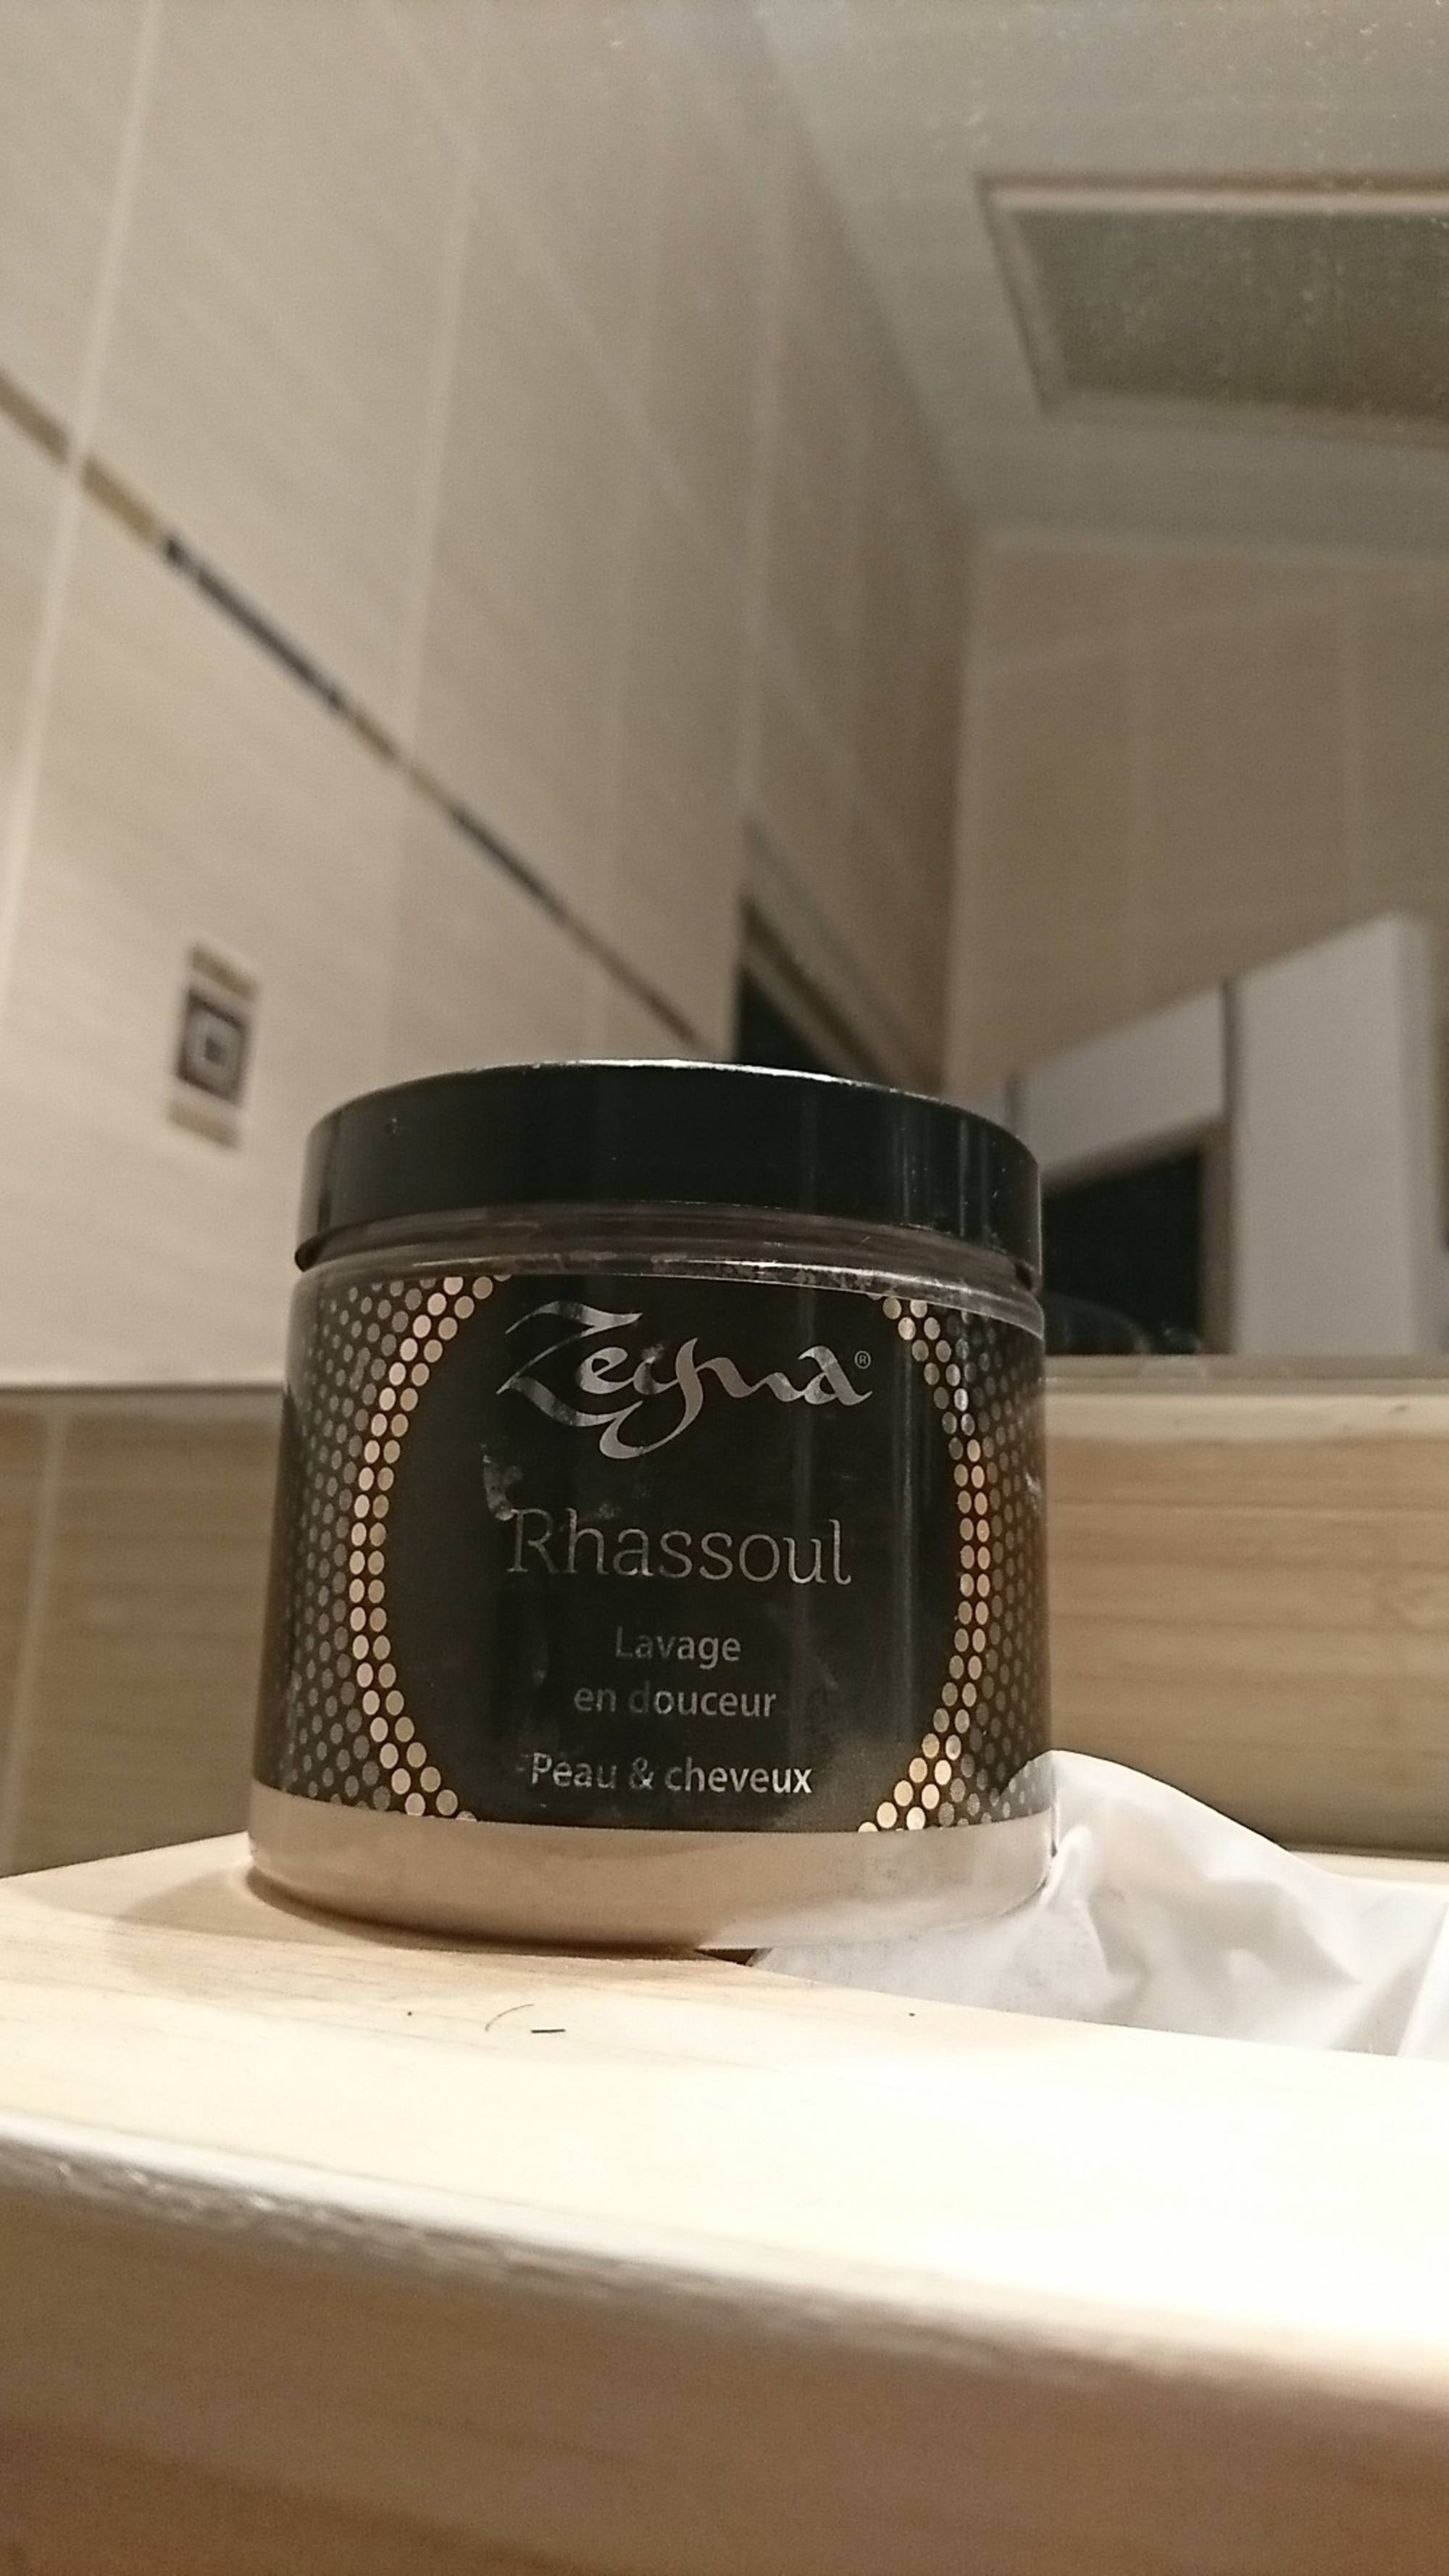 ZEYNA - Rhassoul - Lavage en douceur peau & cheveux